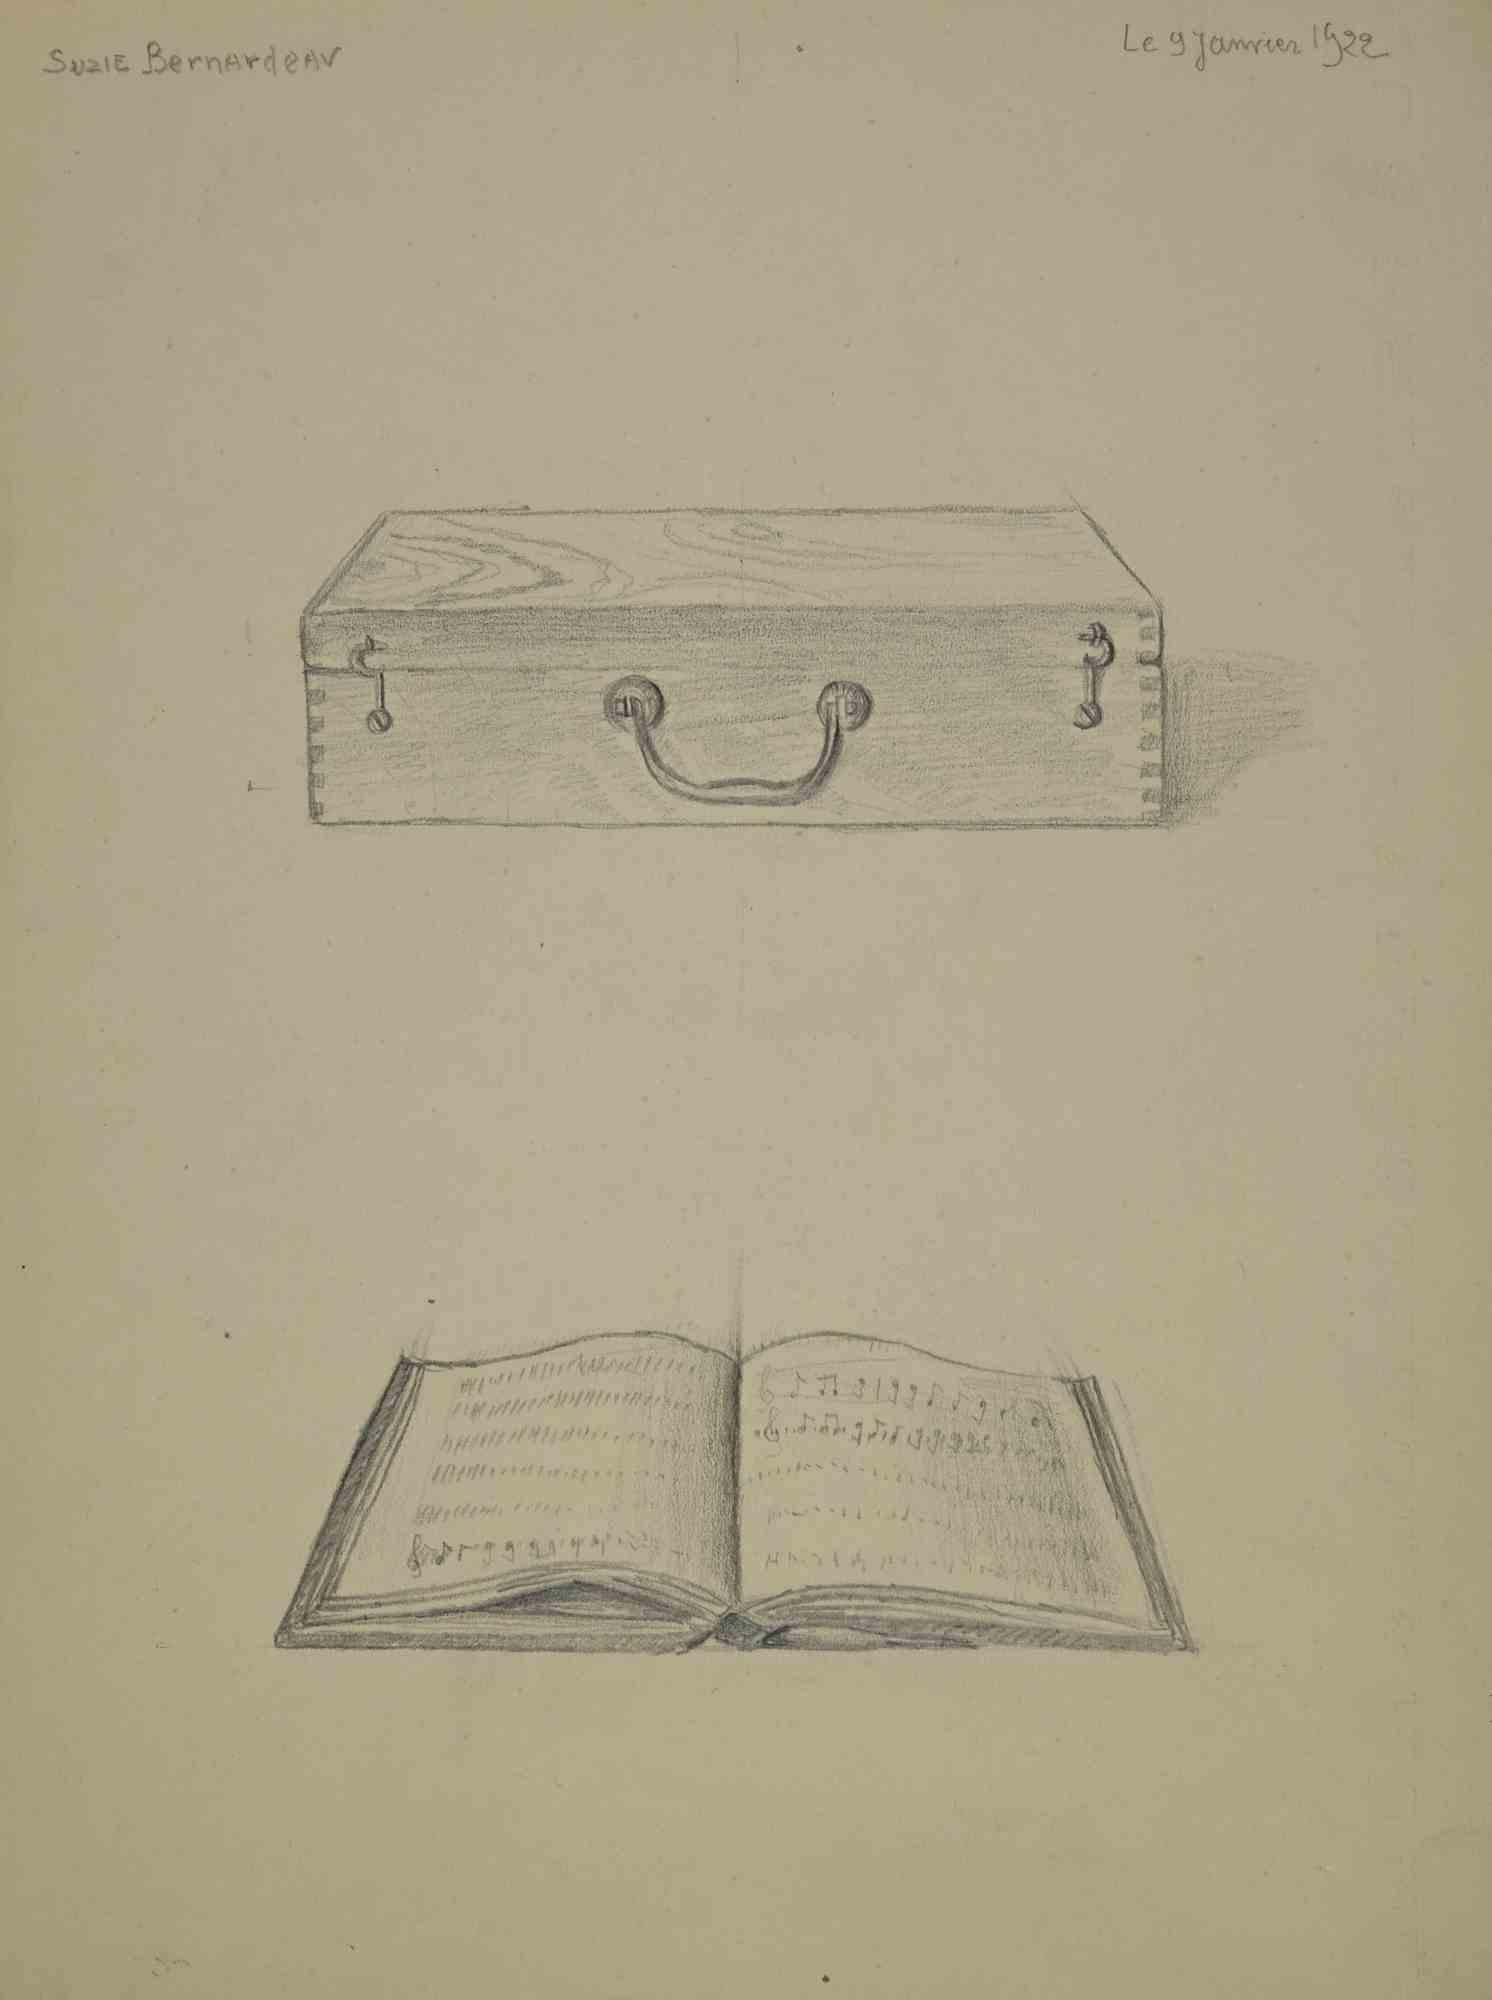 Aktentasche ist ein Kunstwerk von Suzie Bernardeau vom 9. Januar 1922.

Bleistiftzeichnung.

Perfekter Zustand.

Unterzeichnet und datiert.